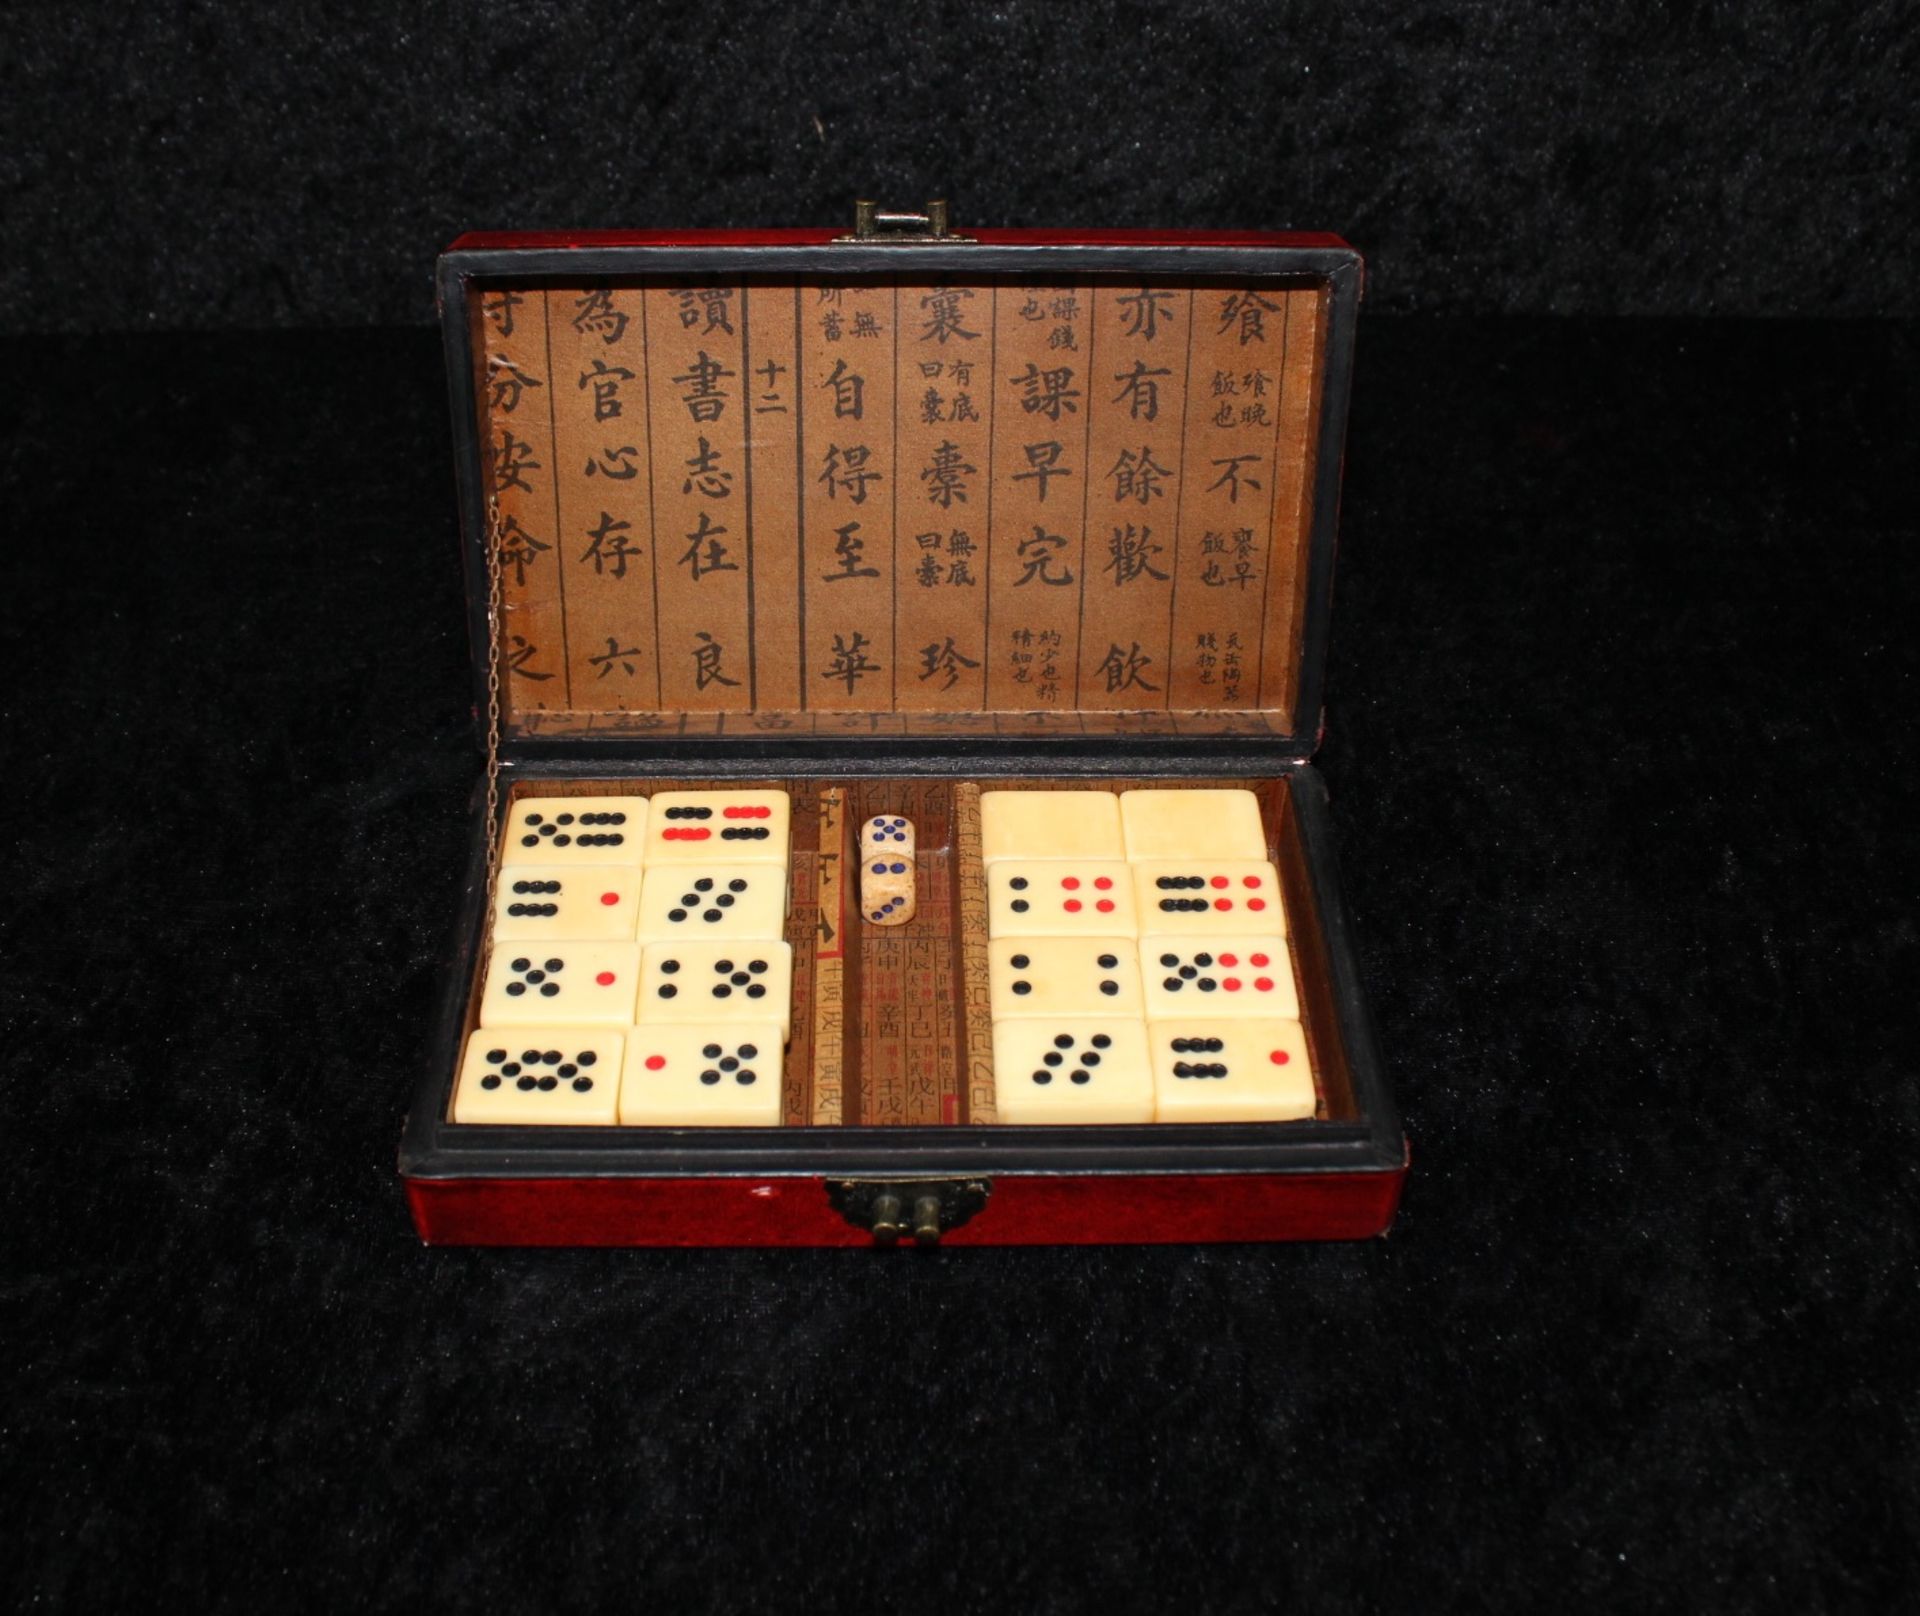 Dominospiel in Lederschatulle, Motiv "Chines. Fischer", China um 1920 - Image 2 of 2